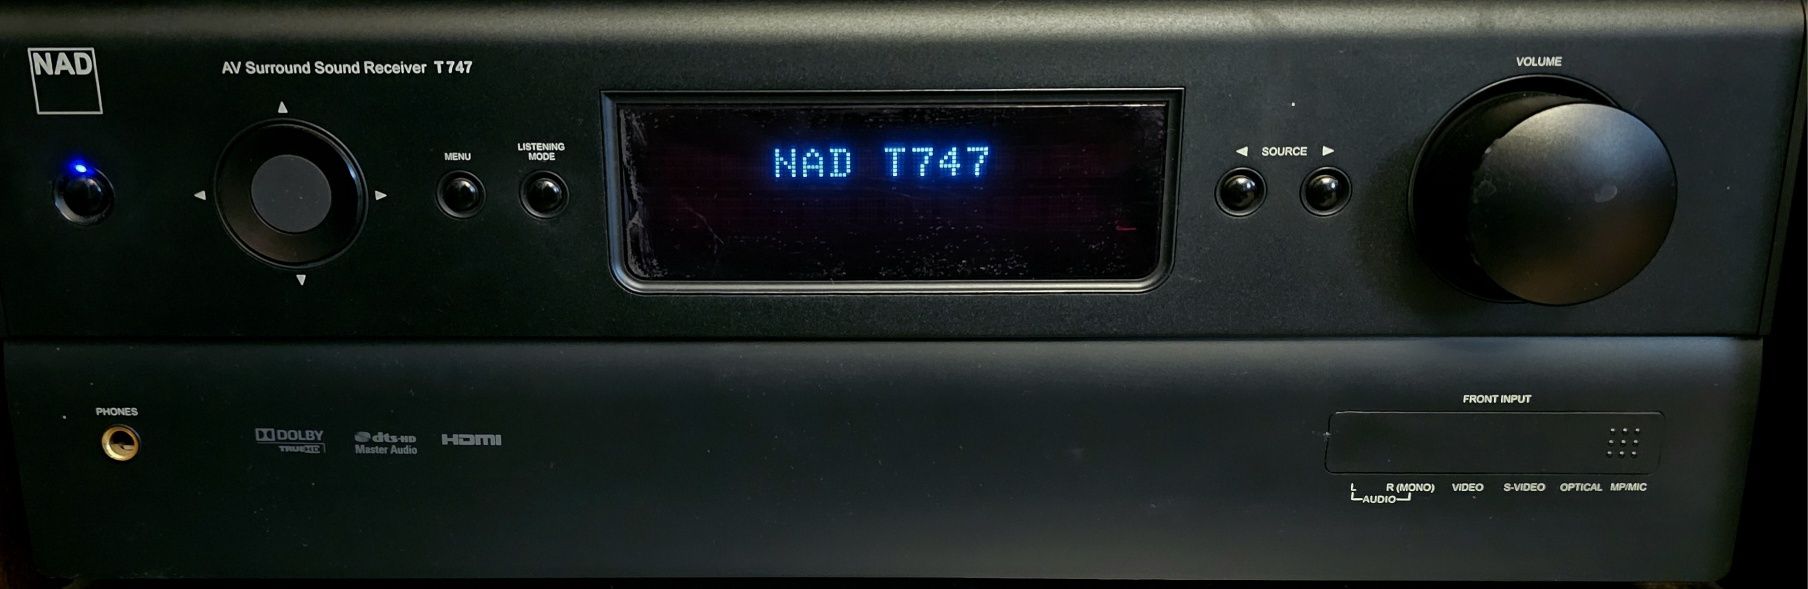 Amplituner NAD T-747 DD DTS  7.1. + ATMOS